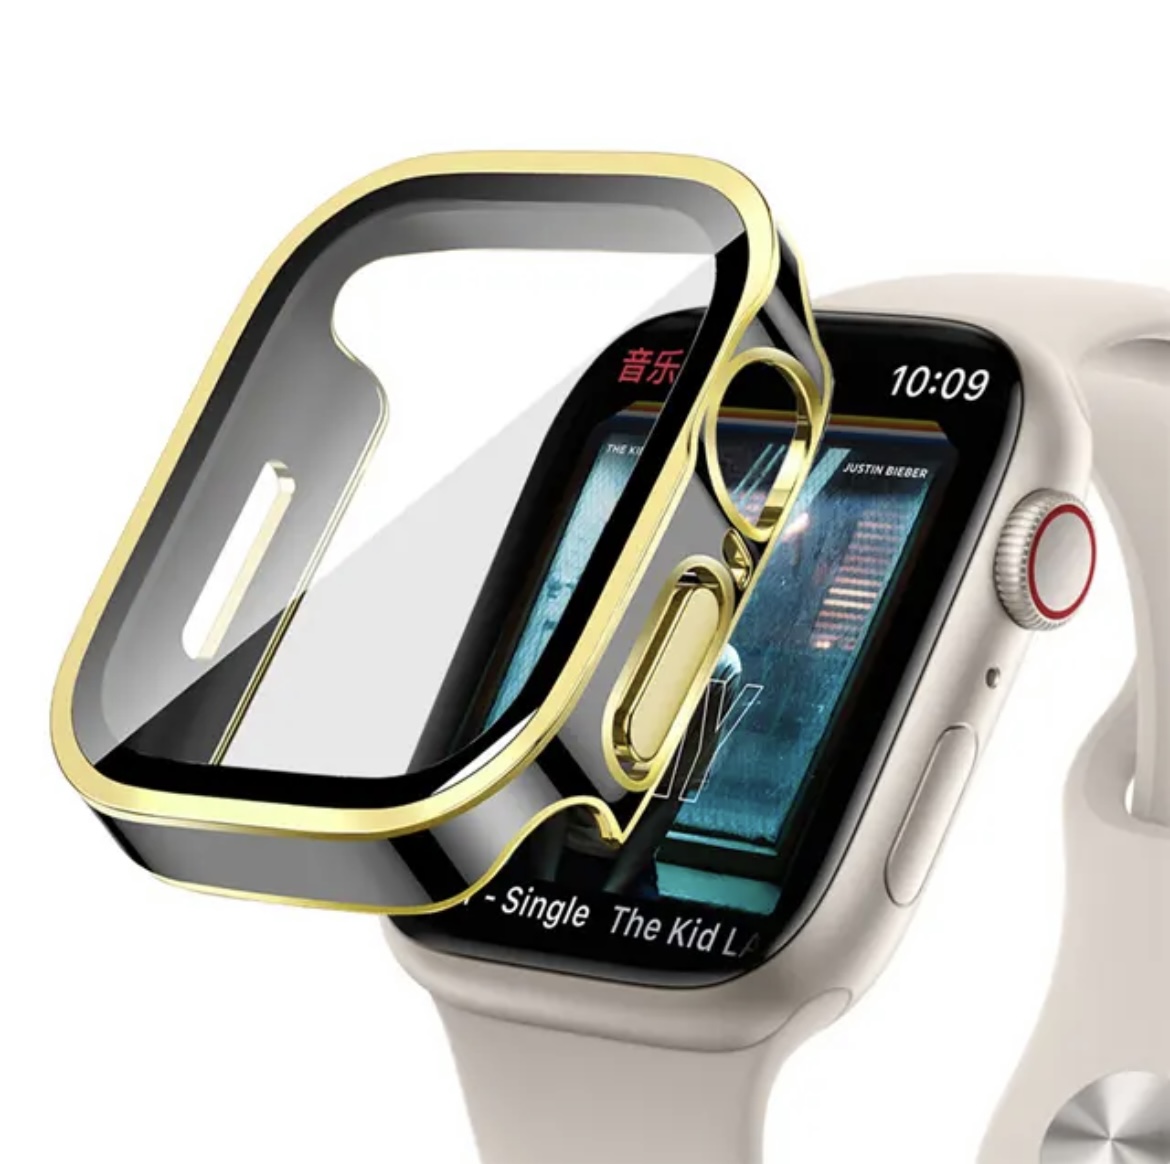 セール価格 アップルウォッチ カバー Apple Watch カバー ケース 防水 45mm 44m...